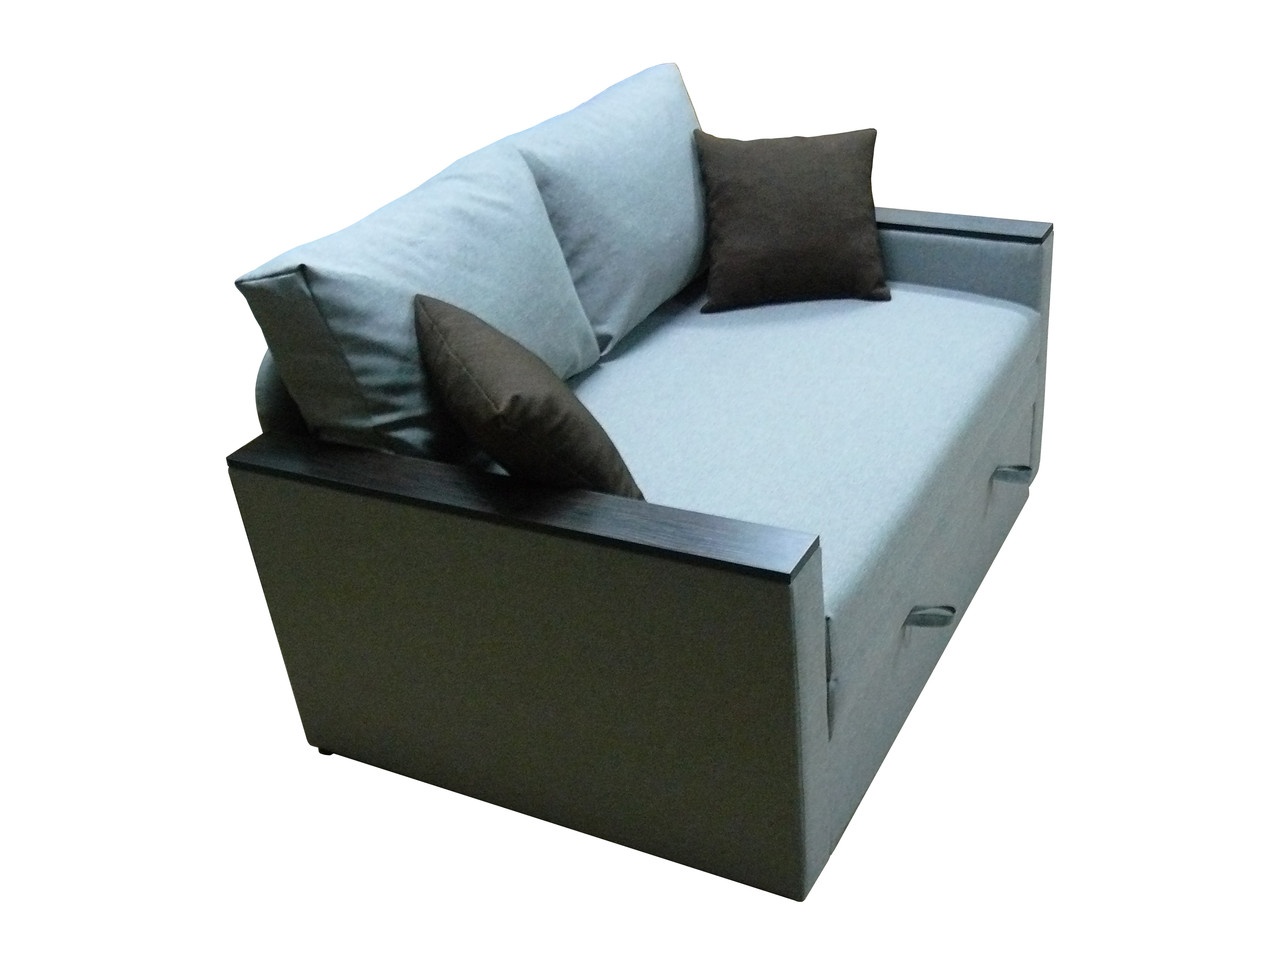 Диван-кресло Кубус 80 (узкие подлокотники, светло-серый, 100х97 см) IMI dkbs80-sn-7 фото